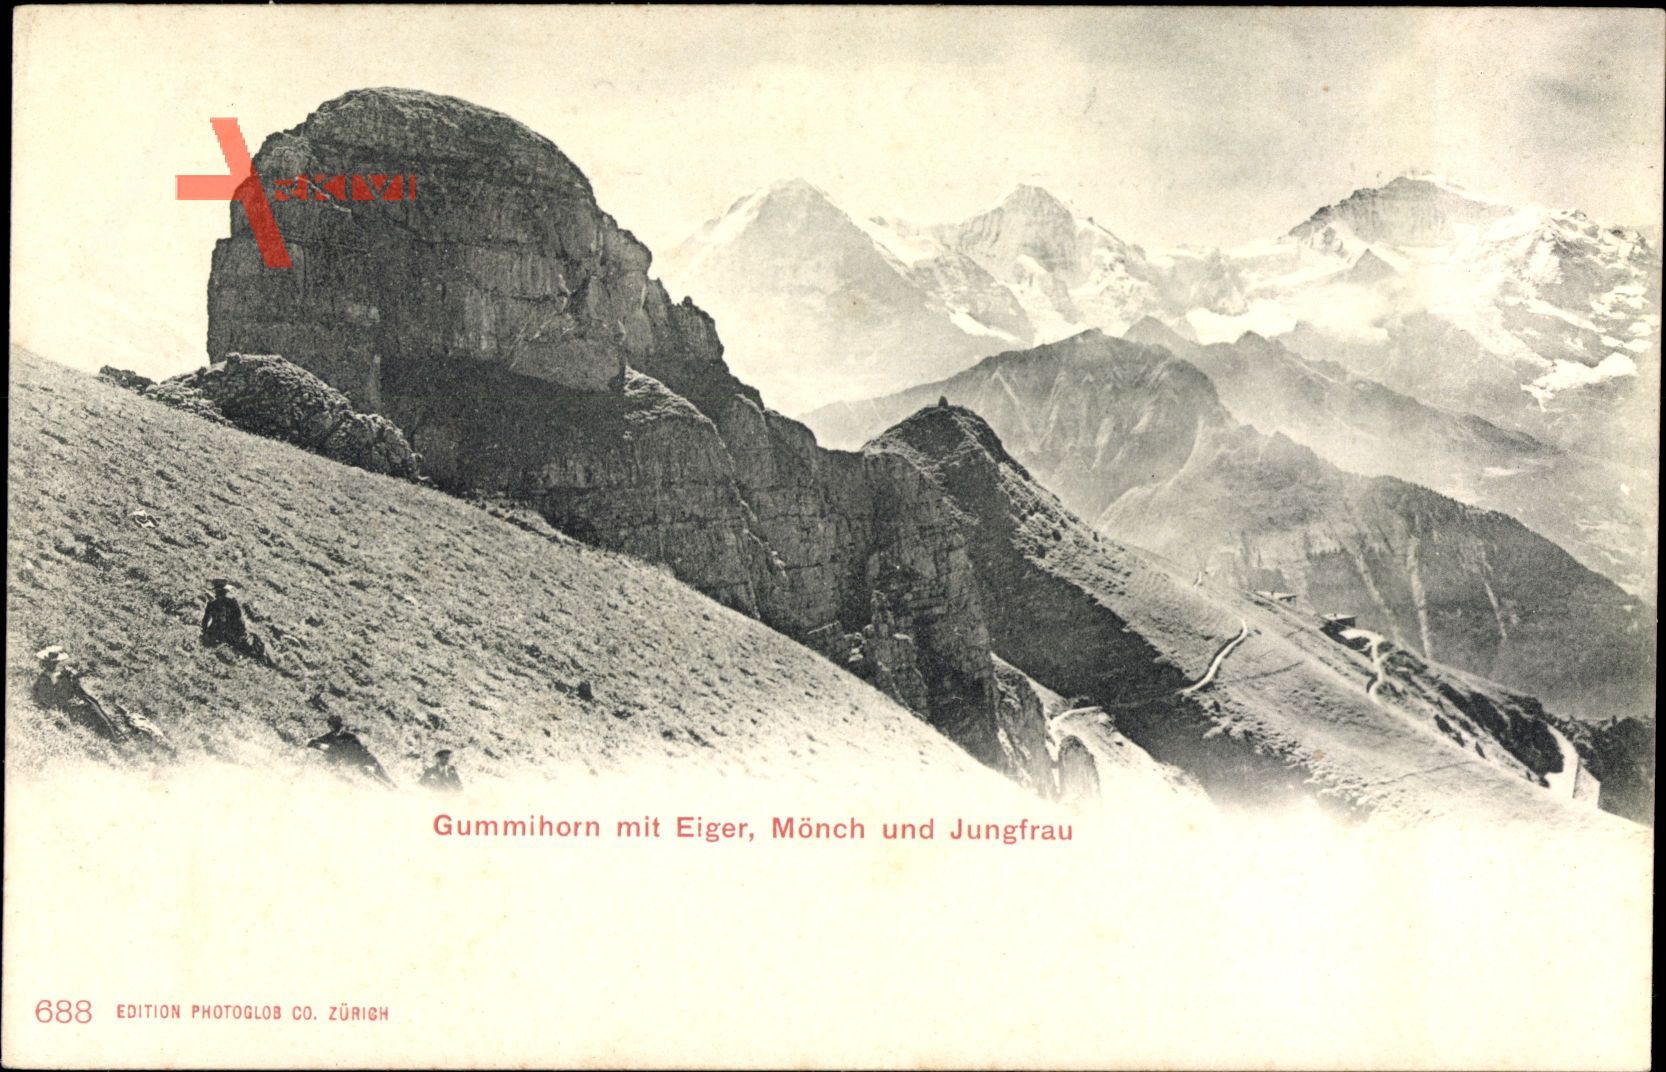 Gummihorn mit Eiger, Mönch und Jungfrau, Schweiz